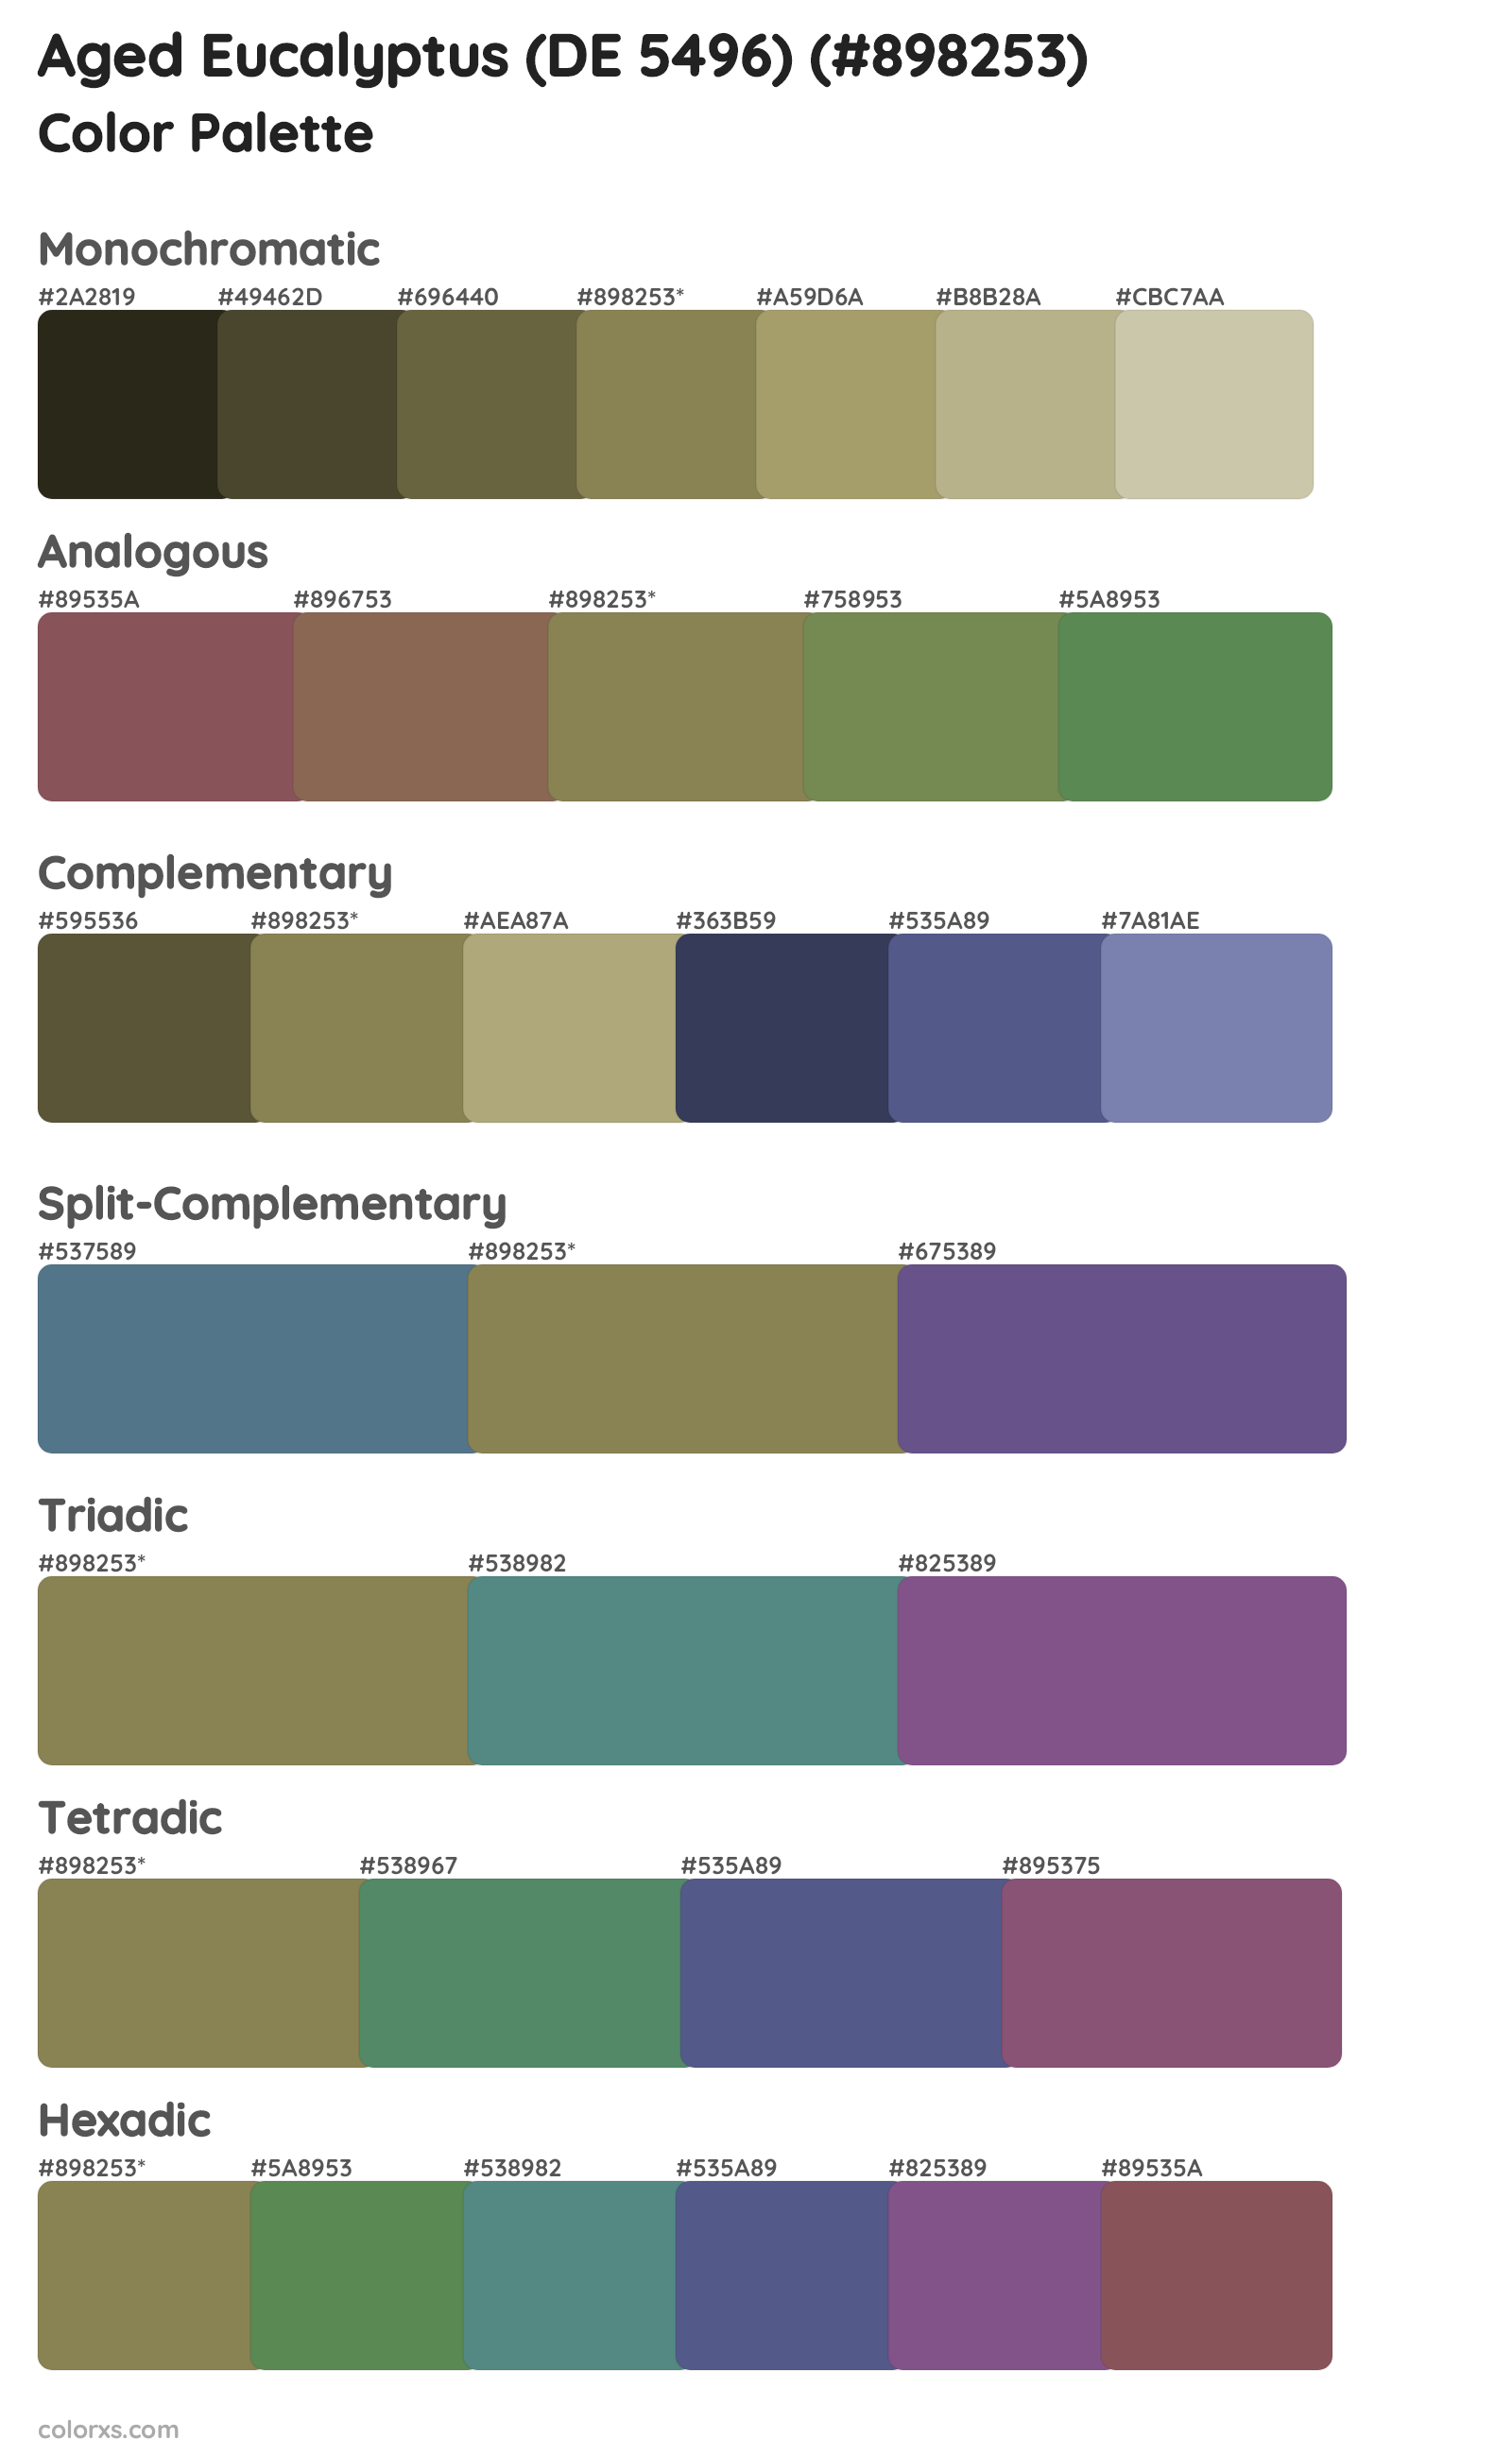 Aged Eucalyptus (DE 5496) Color Scheme Palettes